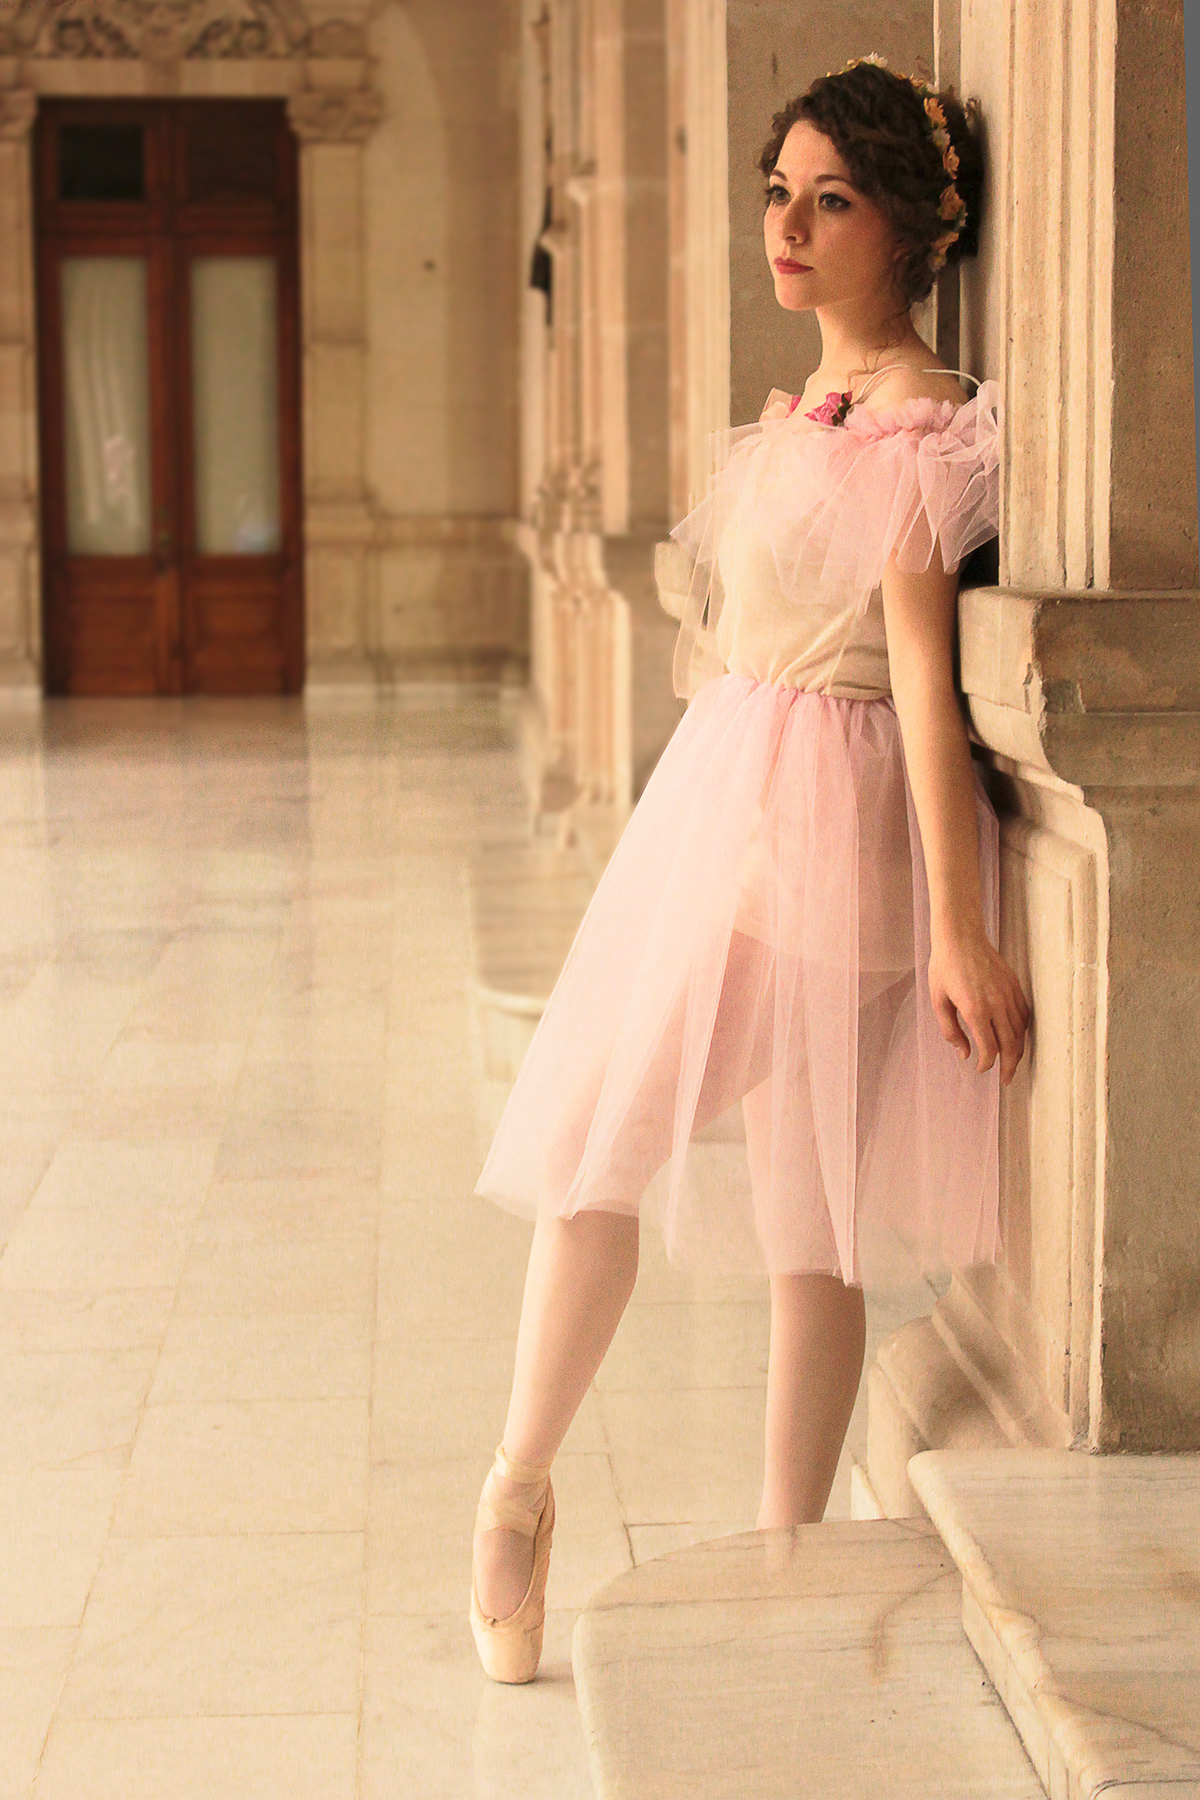 ballet ballet dancer tutu ballerina dress ballet dress cute ballerina ballet photoshoot chihuahua Arely Flores  palacio de gobierno